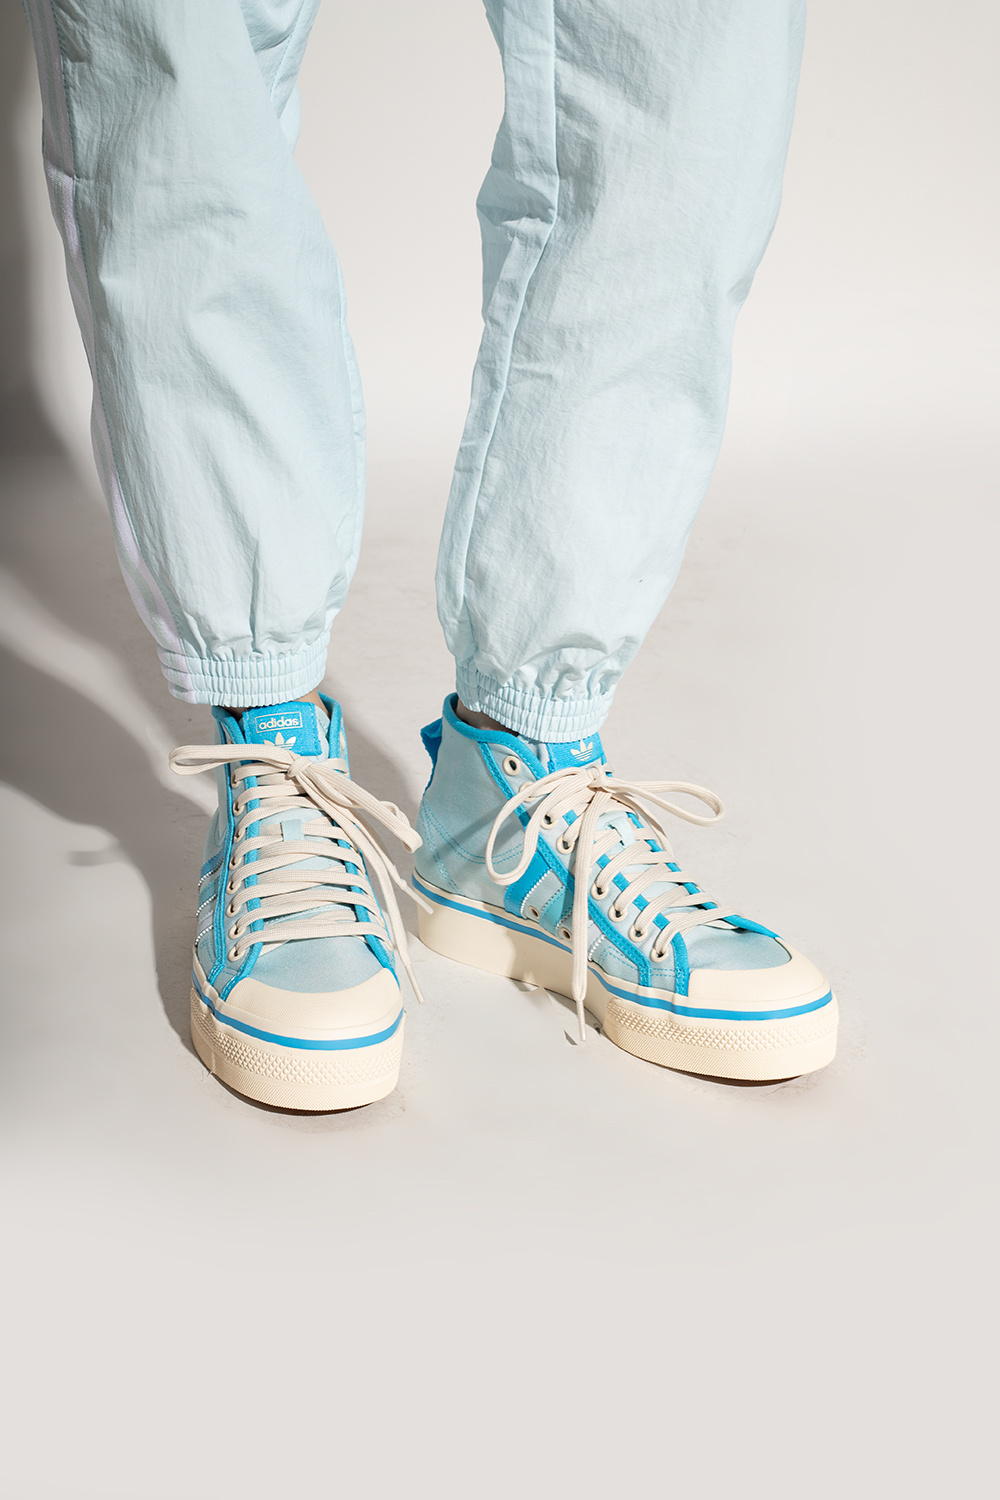 Light blue \'Nizza\' platform sneakers ADIDAS Originals - Vitkac Italy